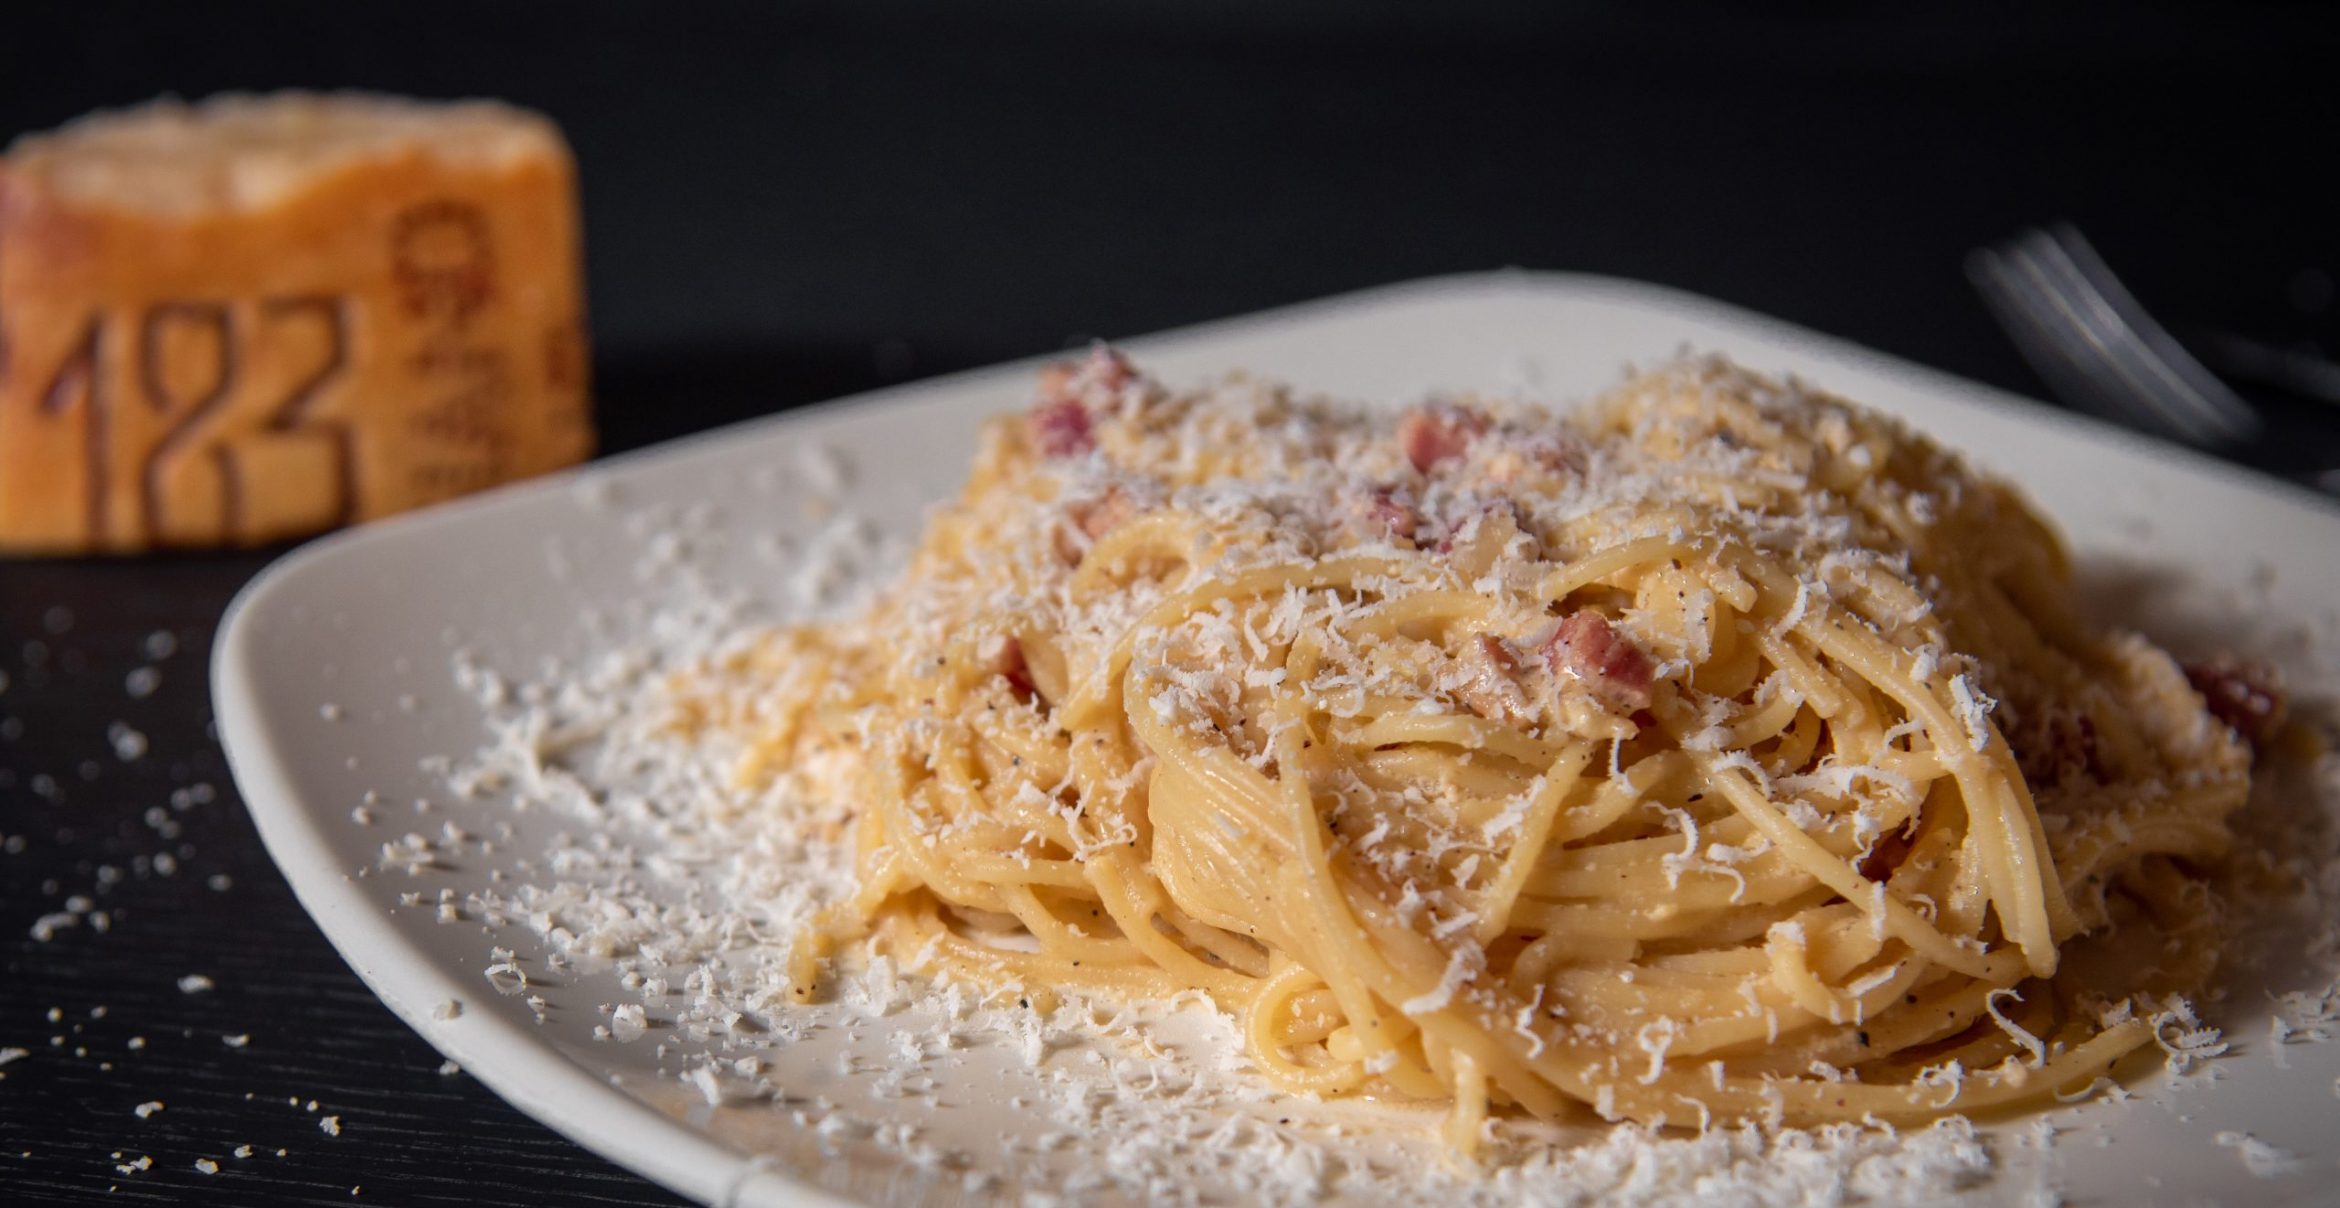 Konflikt kocht hoch: Spaghetti Carbonara ursprünglich ein amerikanisches Gericht?